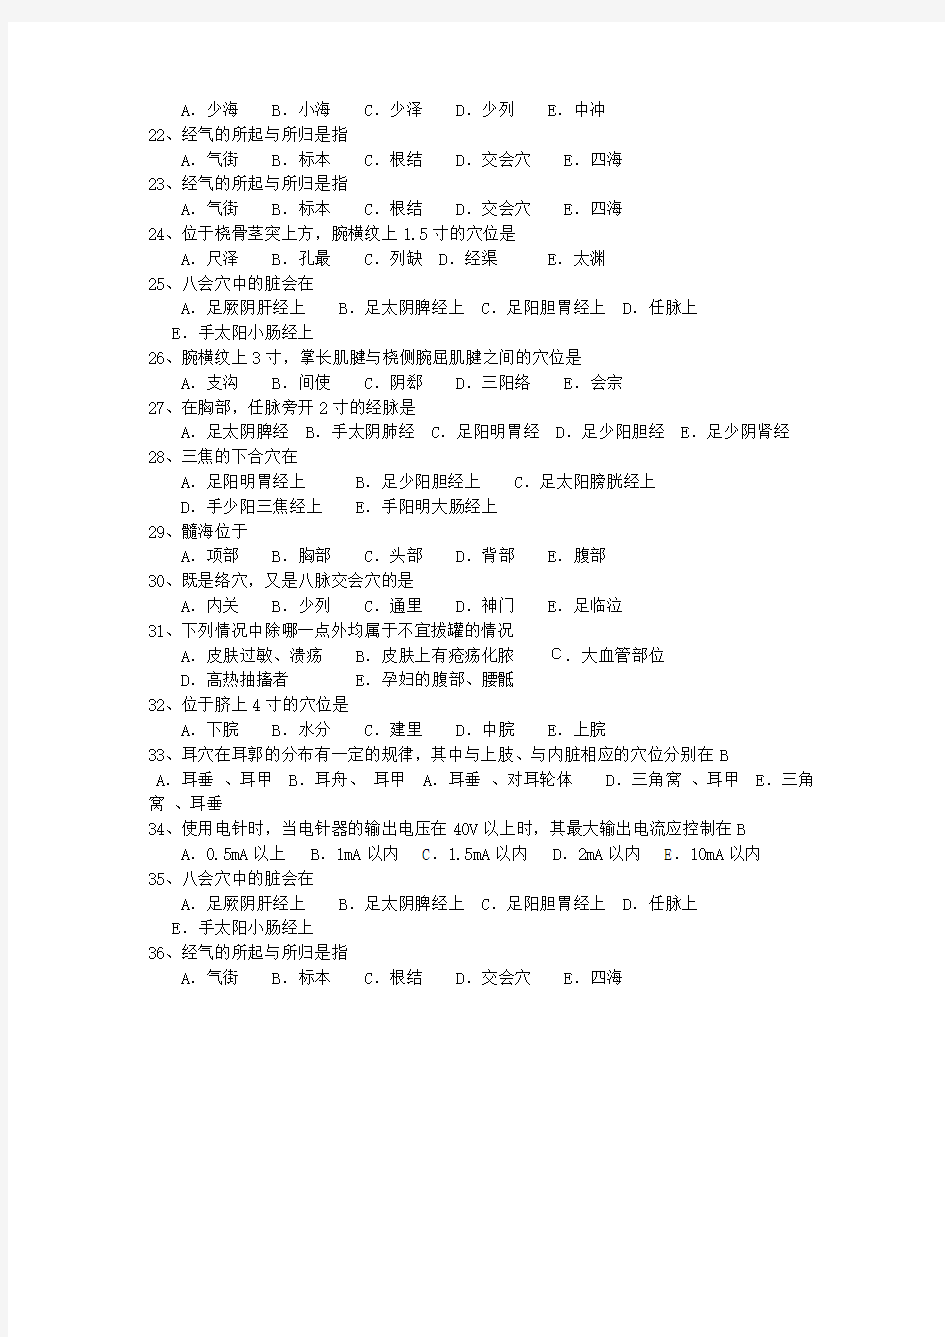 2011年广东省针灸推拿专业考博最新考试试题库(完整版)